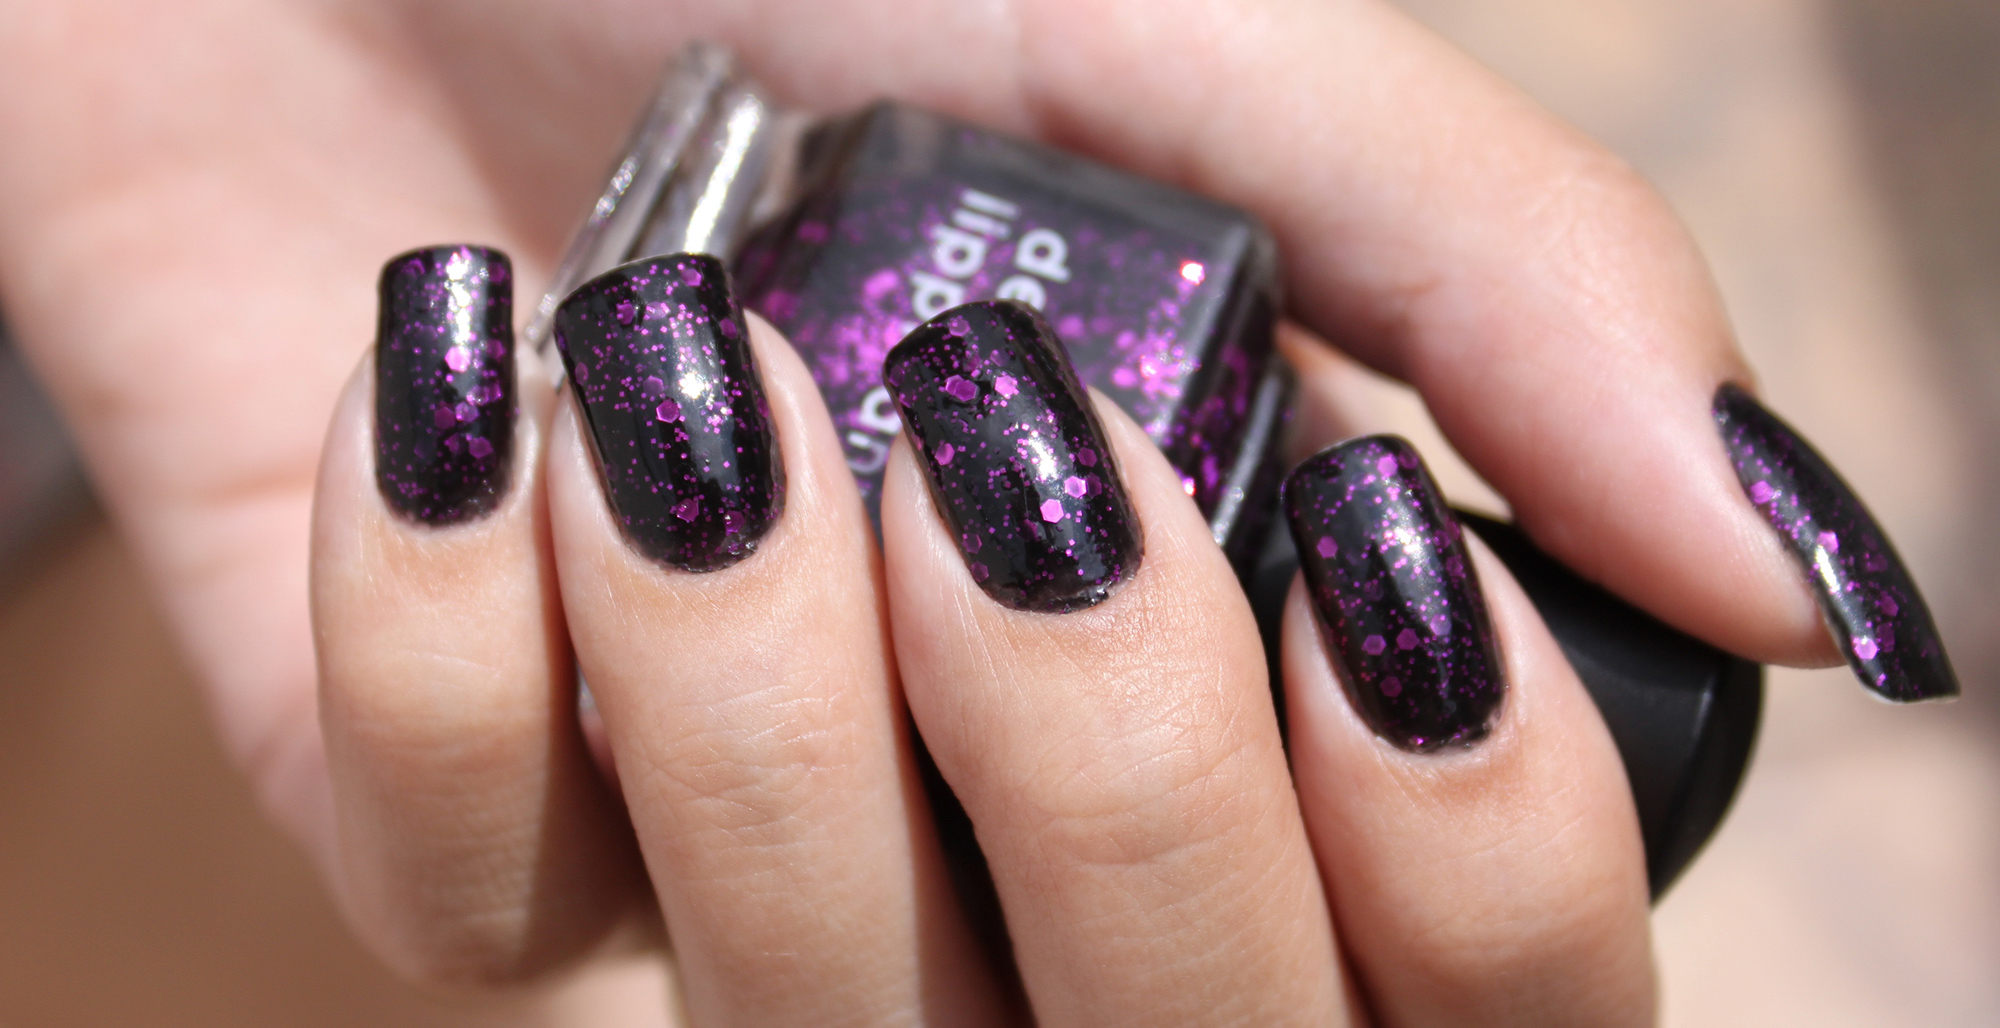 6. Dark purple nails - wide 4